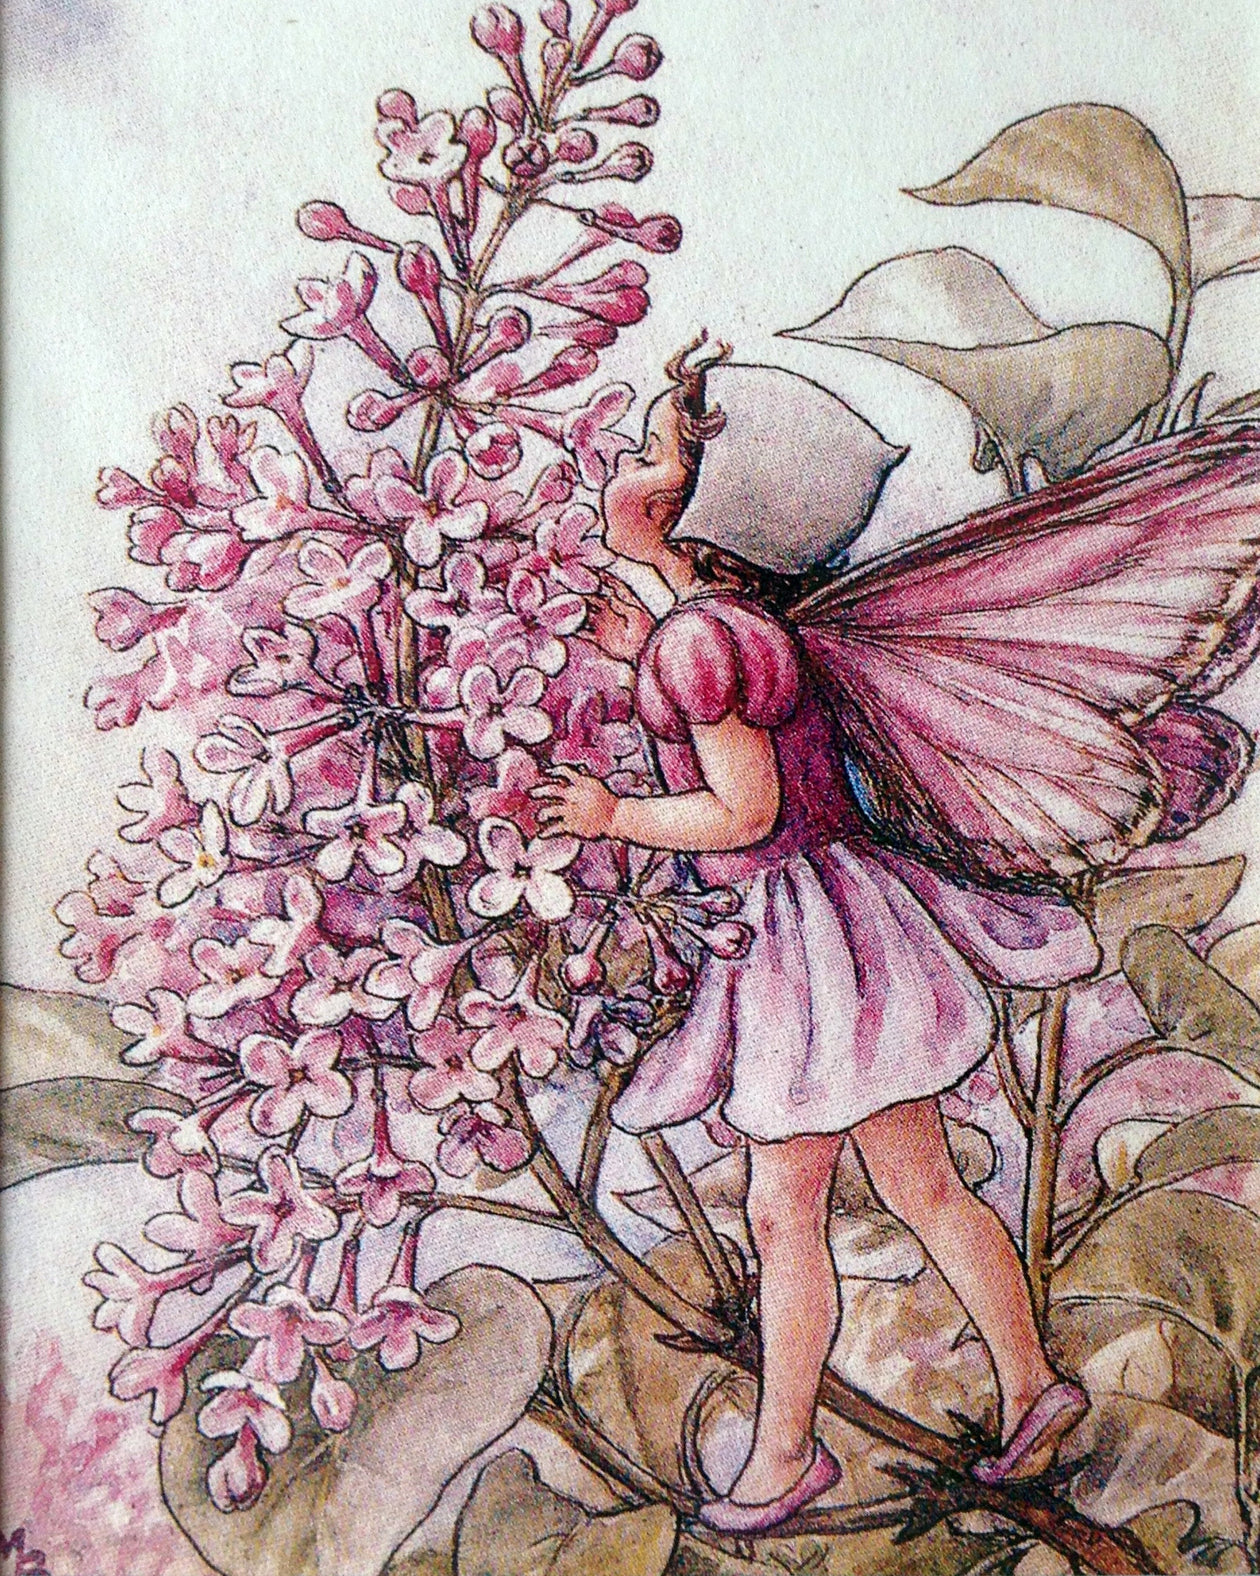 Flower Fairy Print: The Lilac Fairy